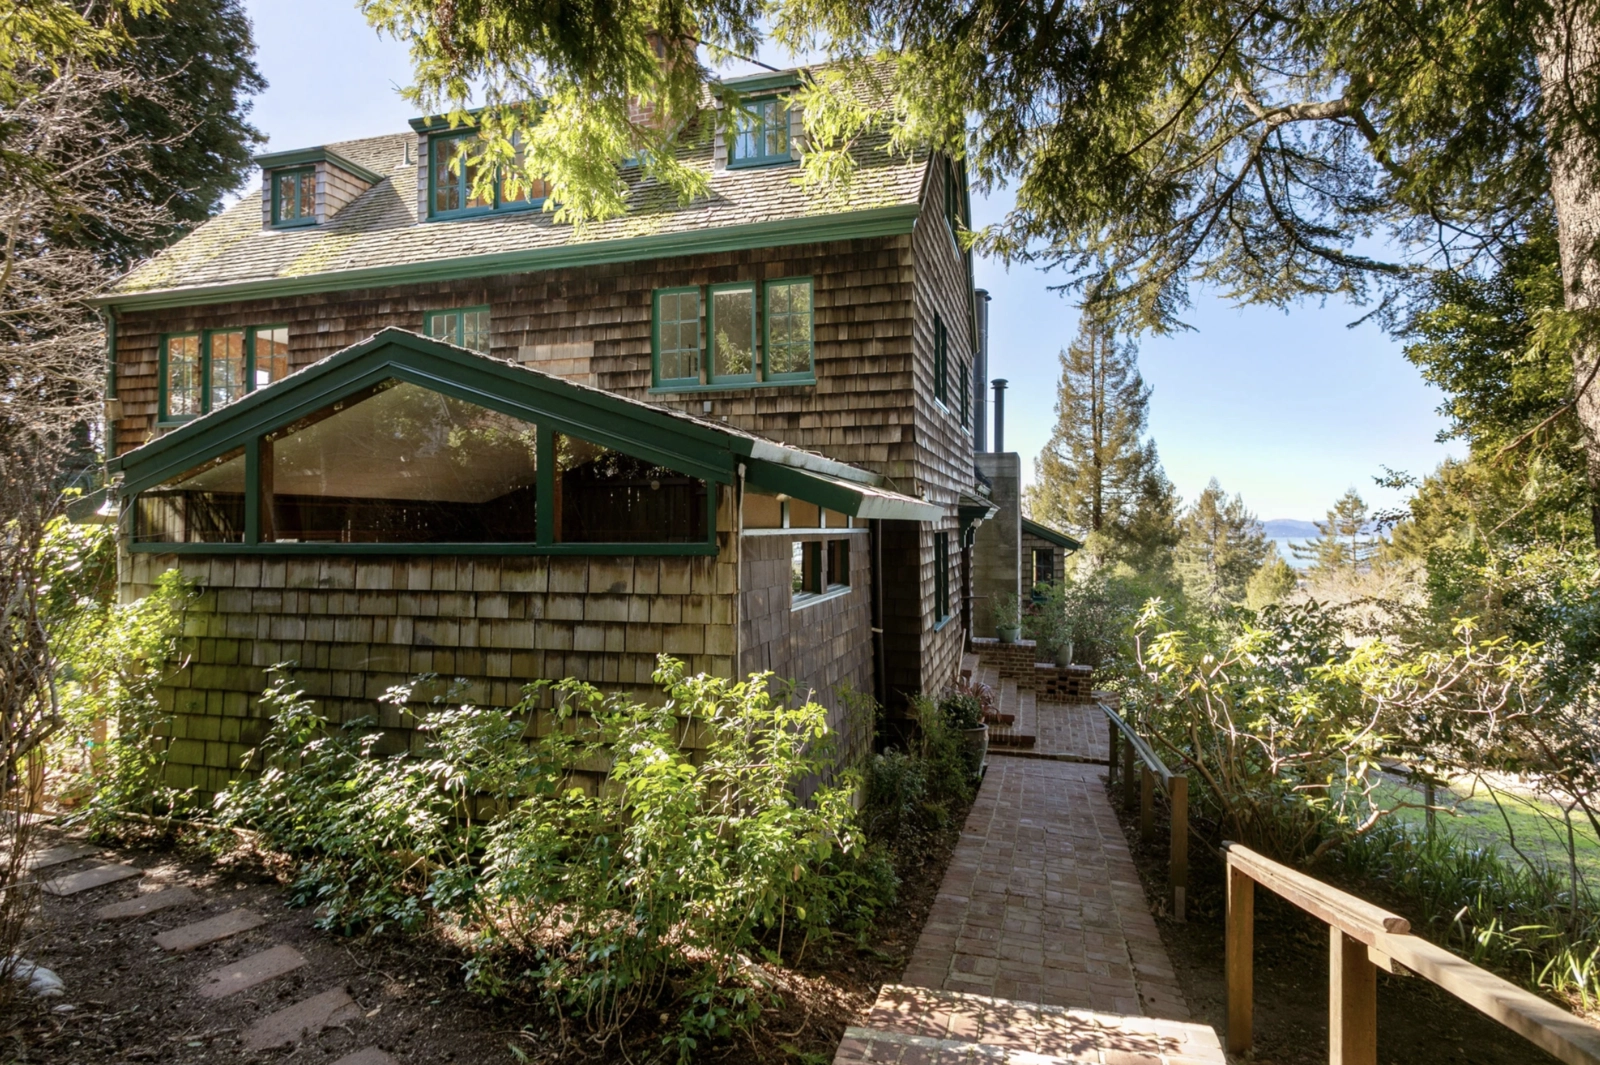 Wyjątkowy dom z Berkeley trafia na rynek po raz pierwszy od 60 lat